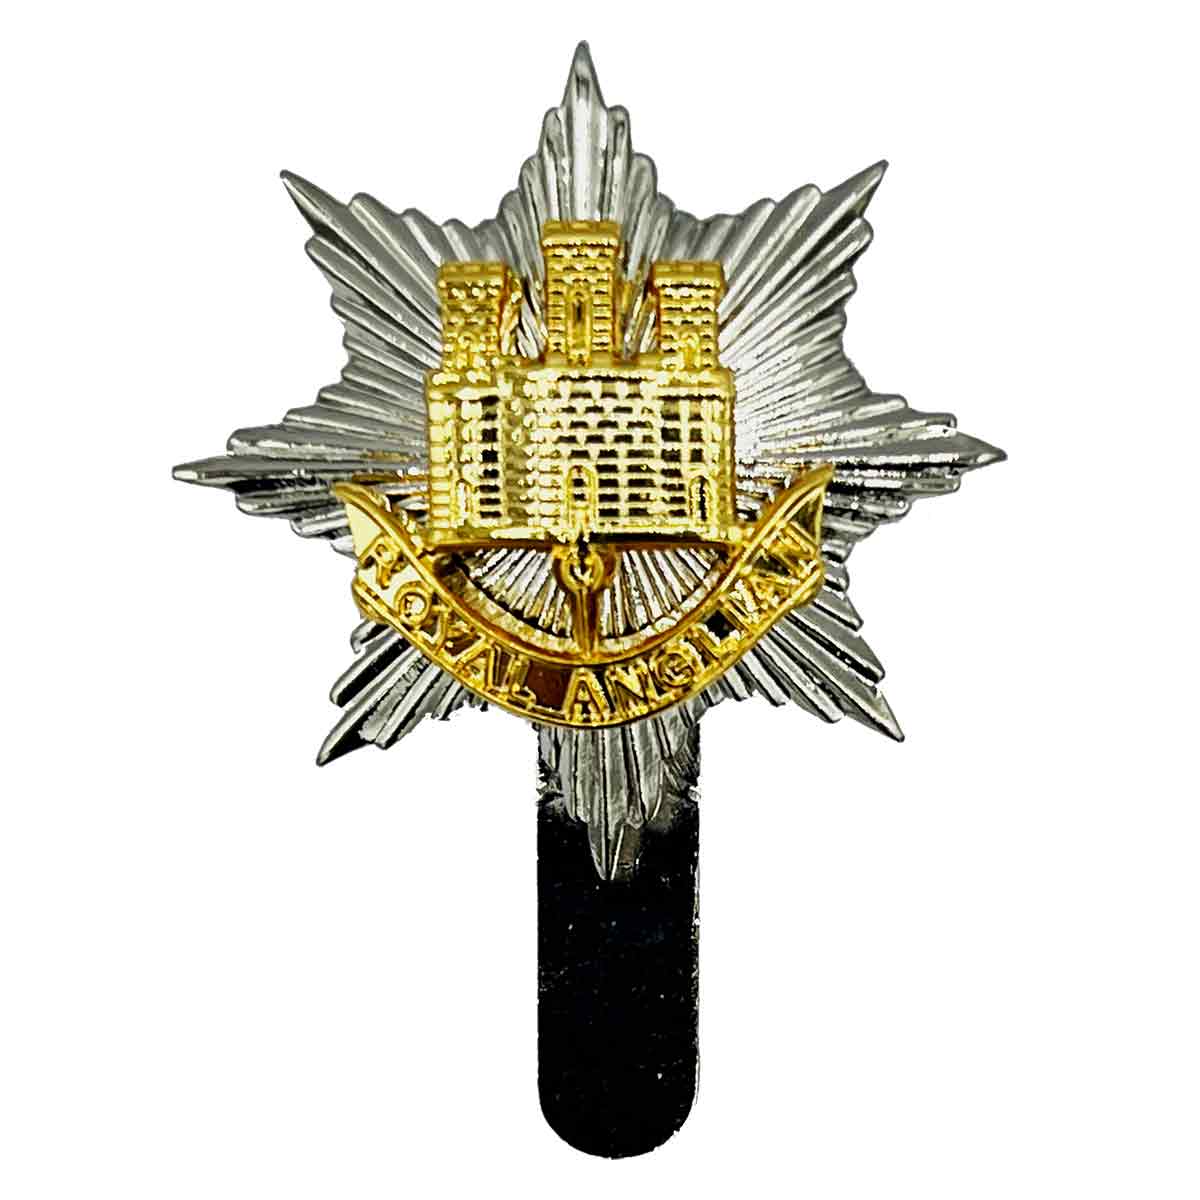 Royal Anglian Regiment Beret Cap Badge - John Bull Clothing